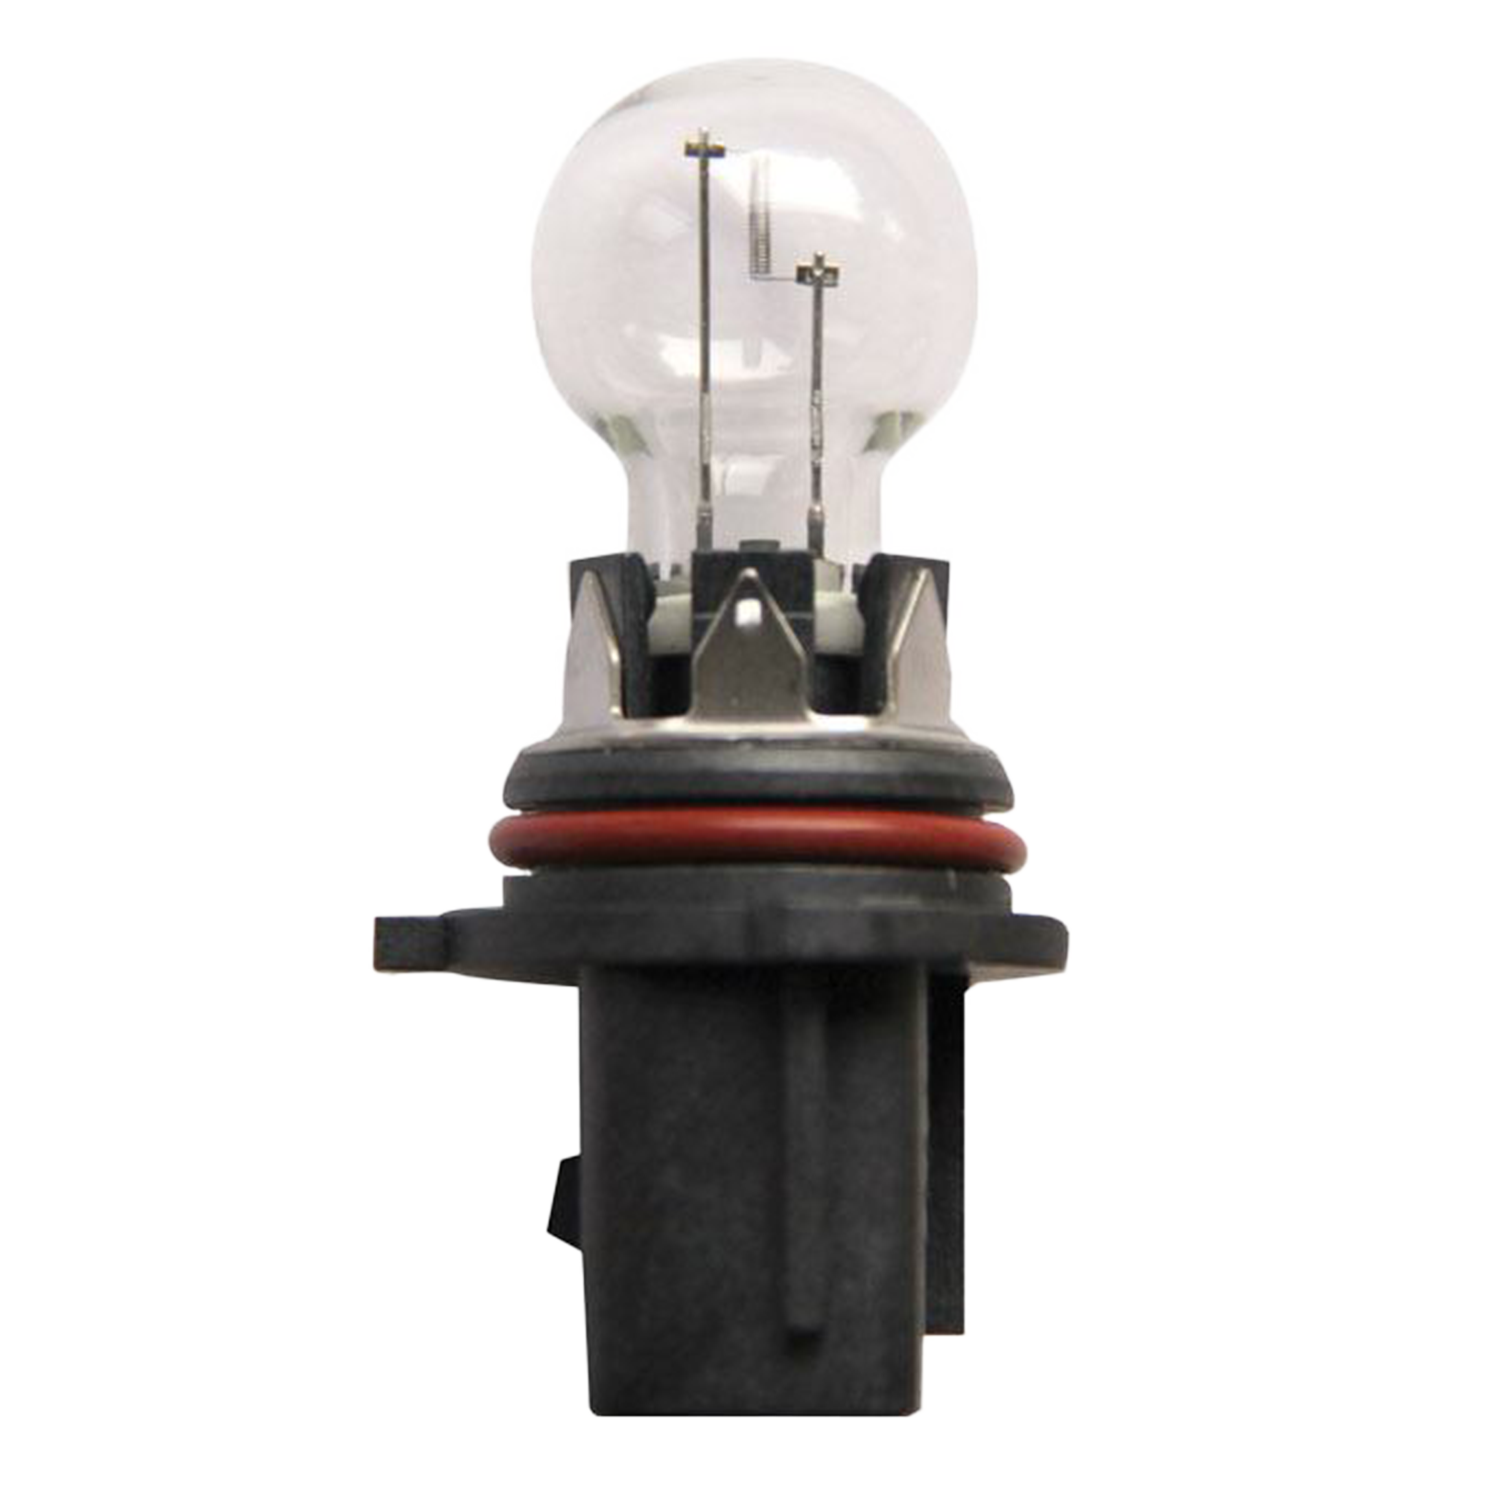 Ampoules Wedge Base T10 - 12 LEDs 12V 10W - Blister de 2 Ampoules